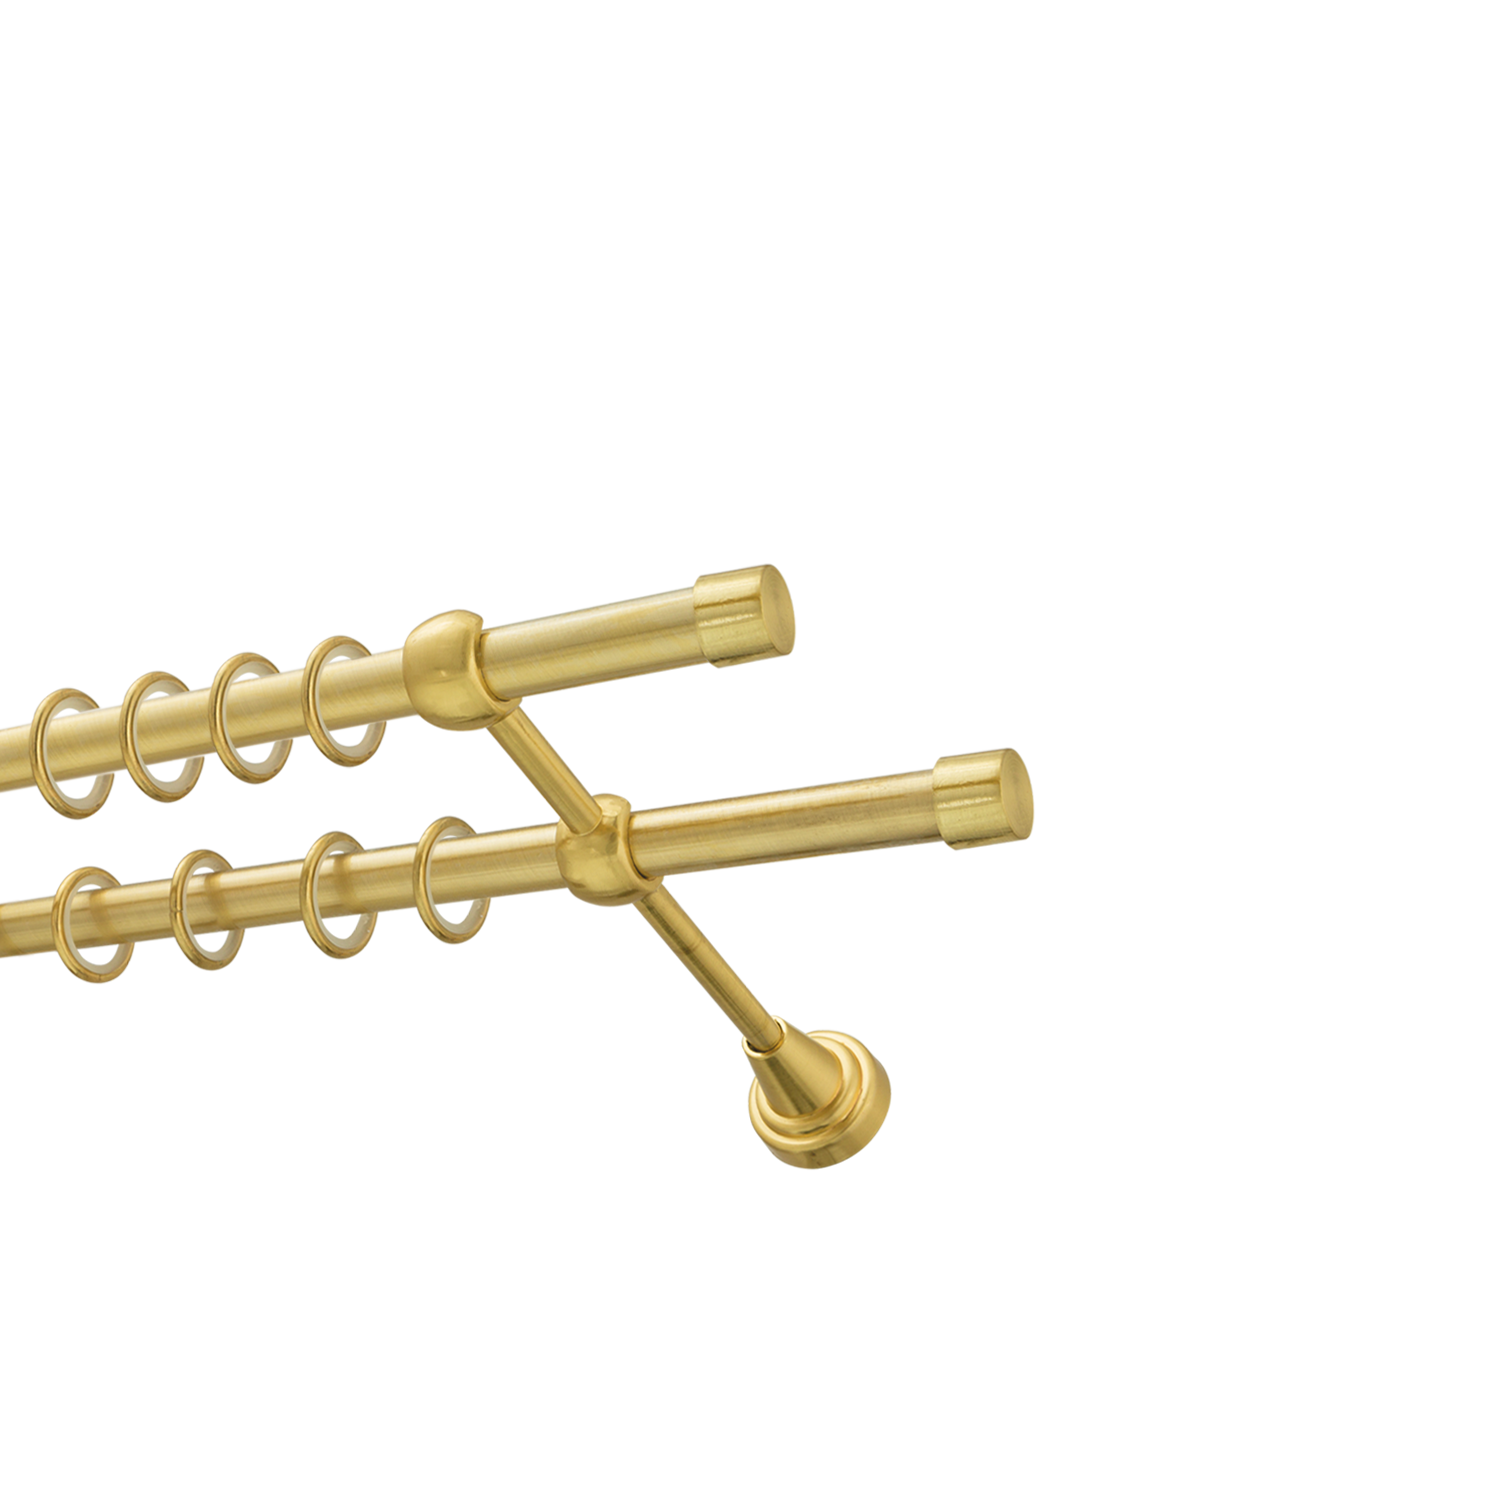 Металлический карниз для штор Заглушка, двухрядный 16/16 мм, золото, гладкая штанга, длина 200 см - фото Wikidecor.ru